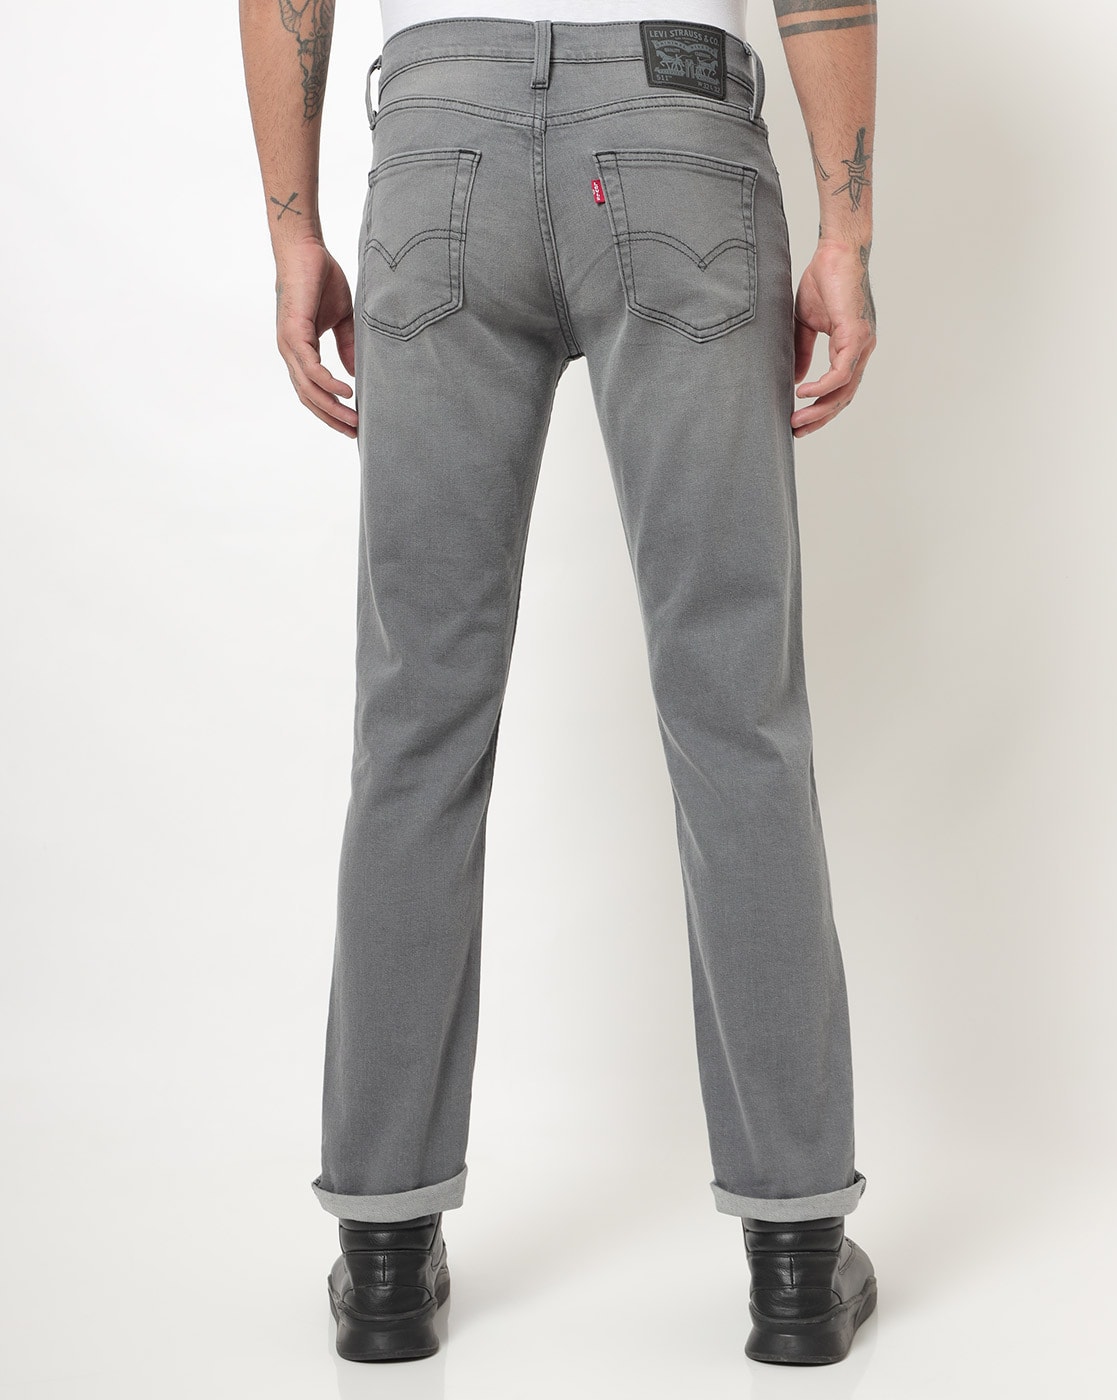 Suri koolhydraat binnenkomst Buy Grey Jeans for Men by LEVIS Online | Ajio.com